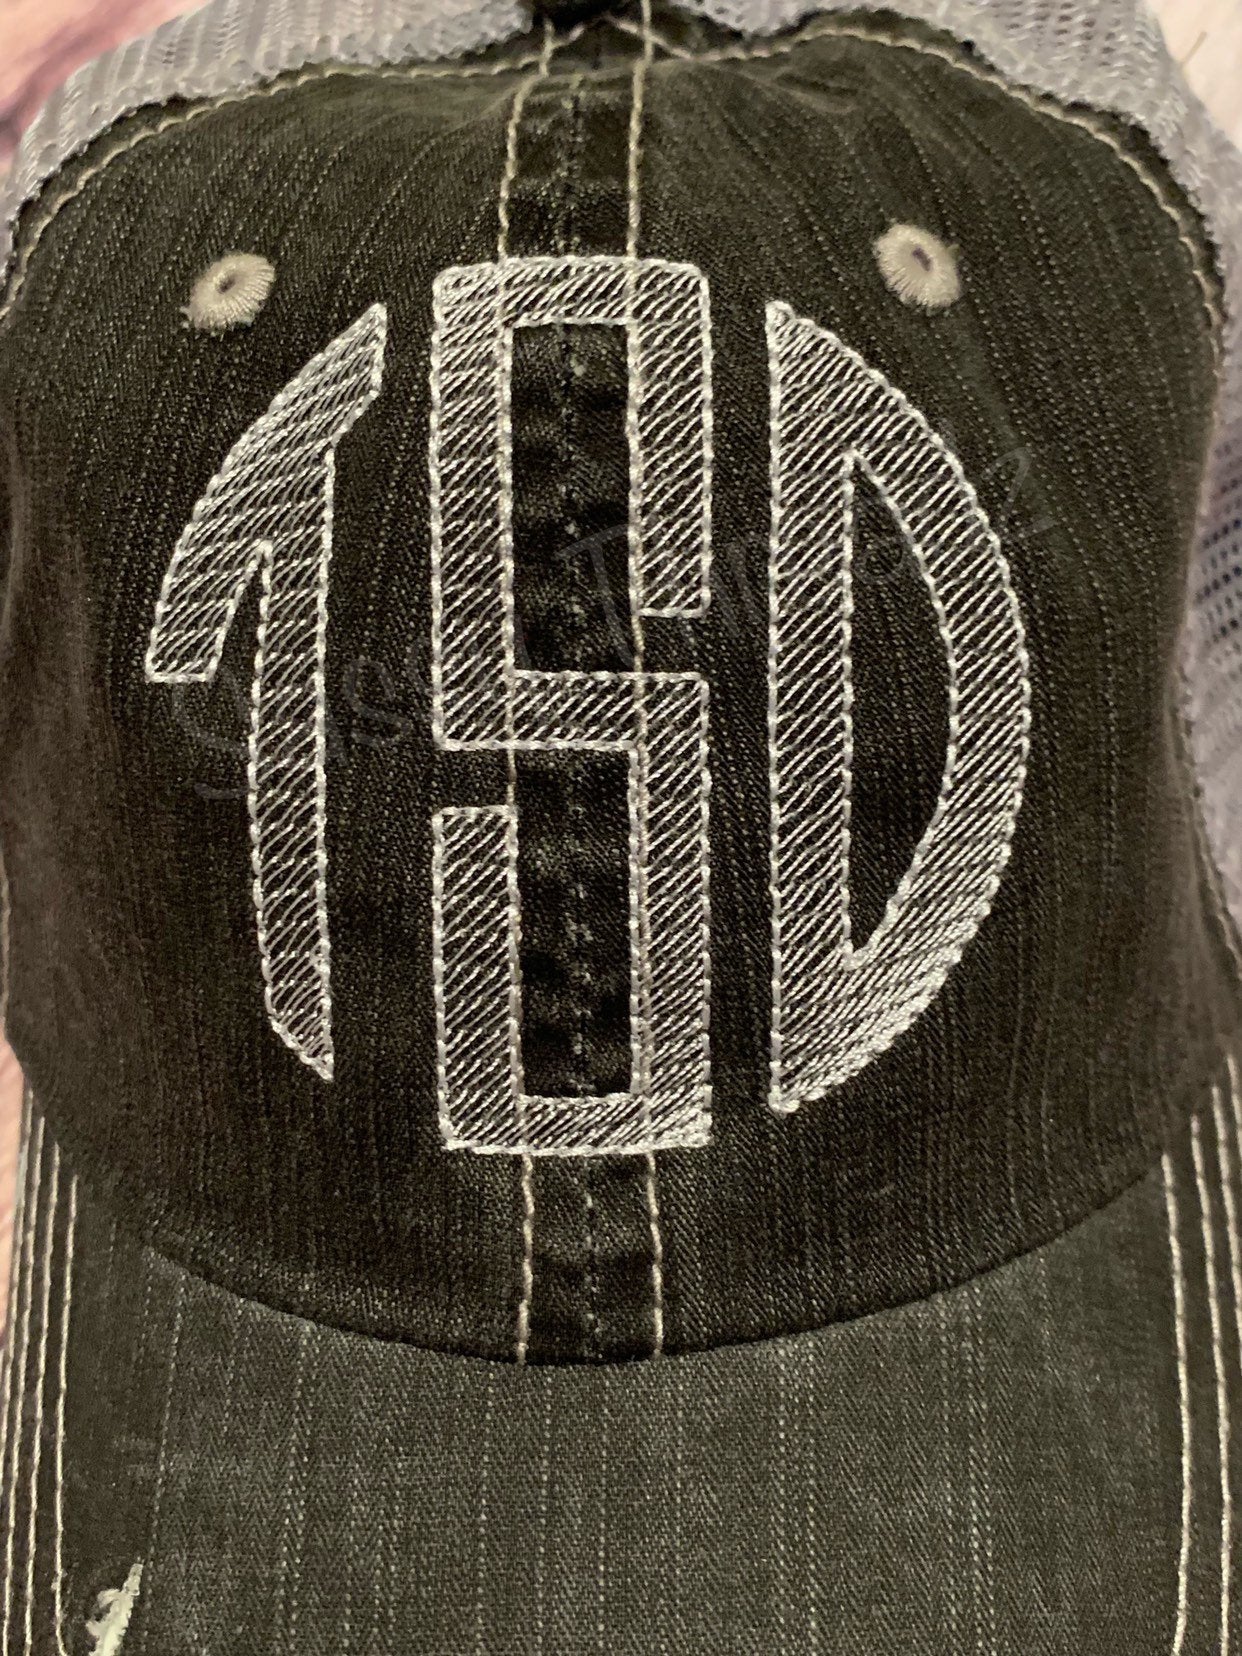 Sketch Circle Embroidered Trucker Hat - Sassy Threadz